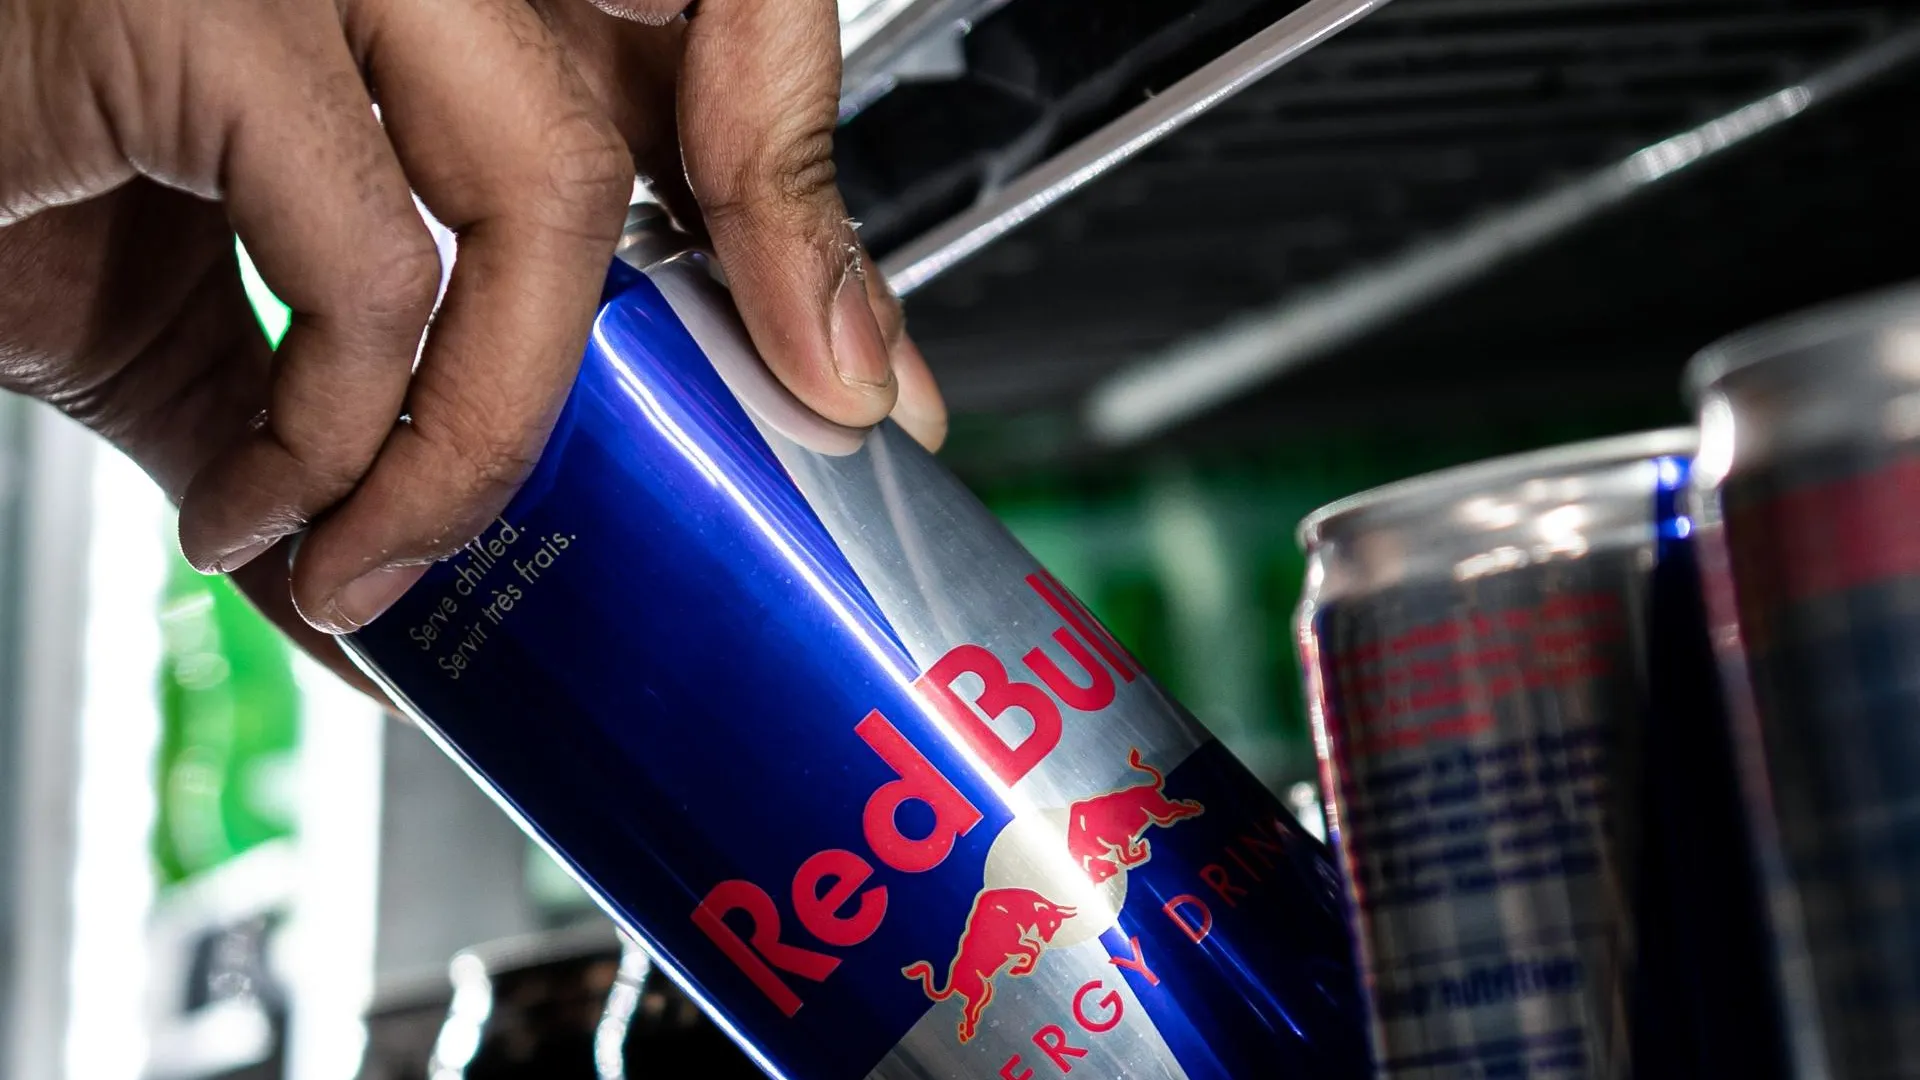 Фейк: производитель Red Bull использовал цветные точки на дне банок для различия напитков